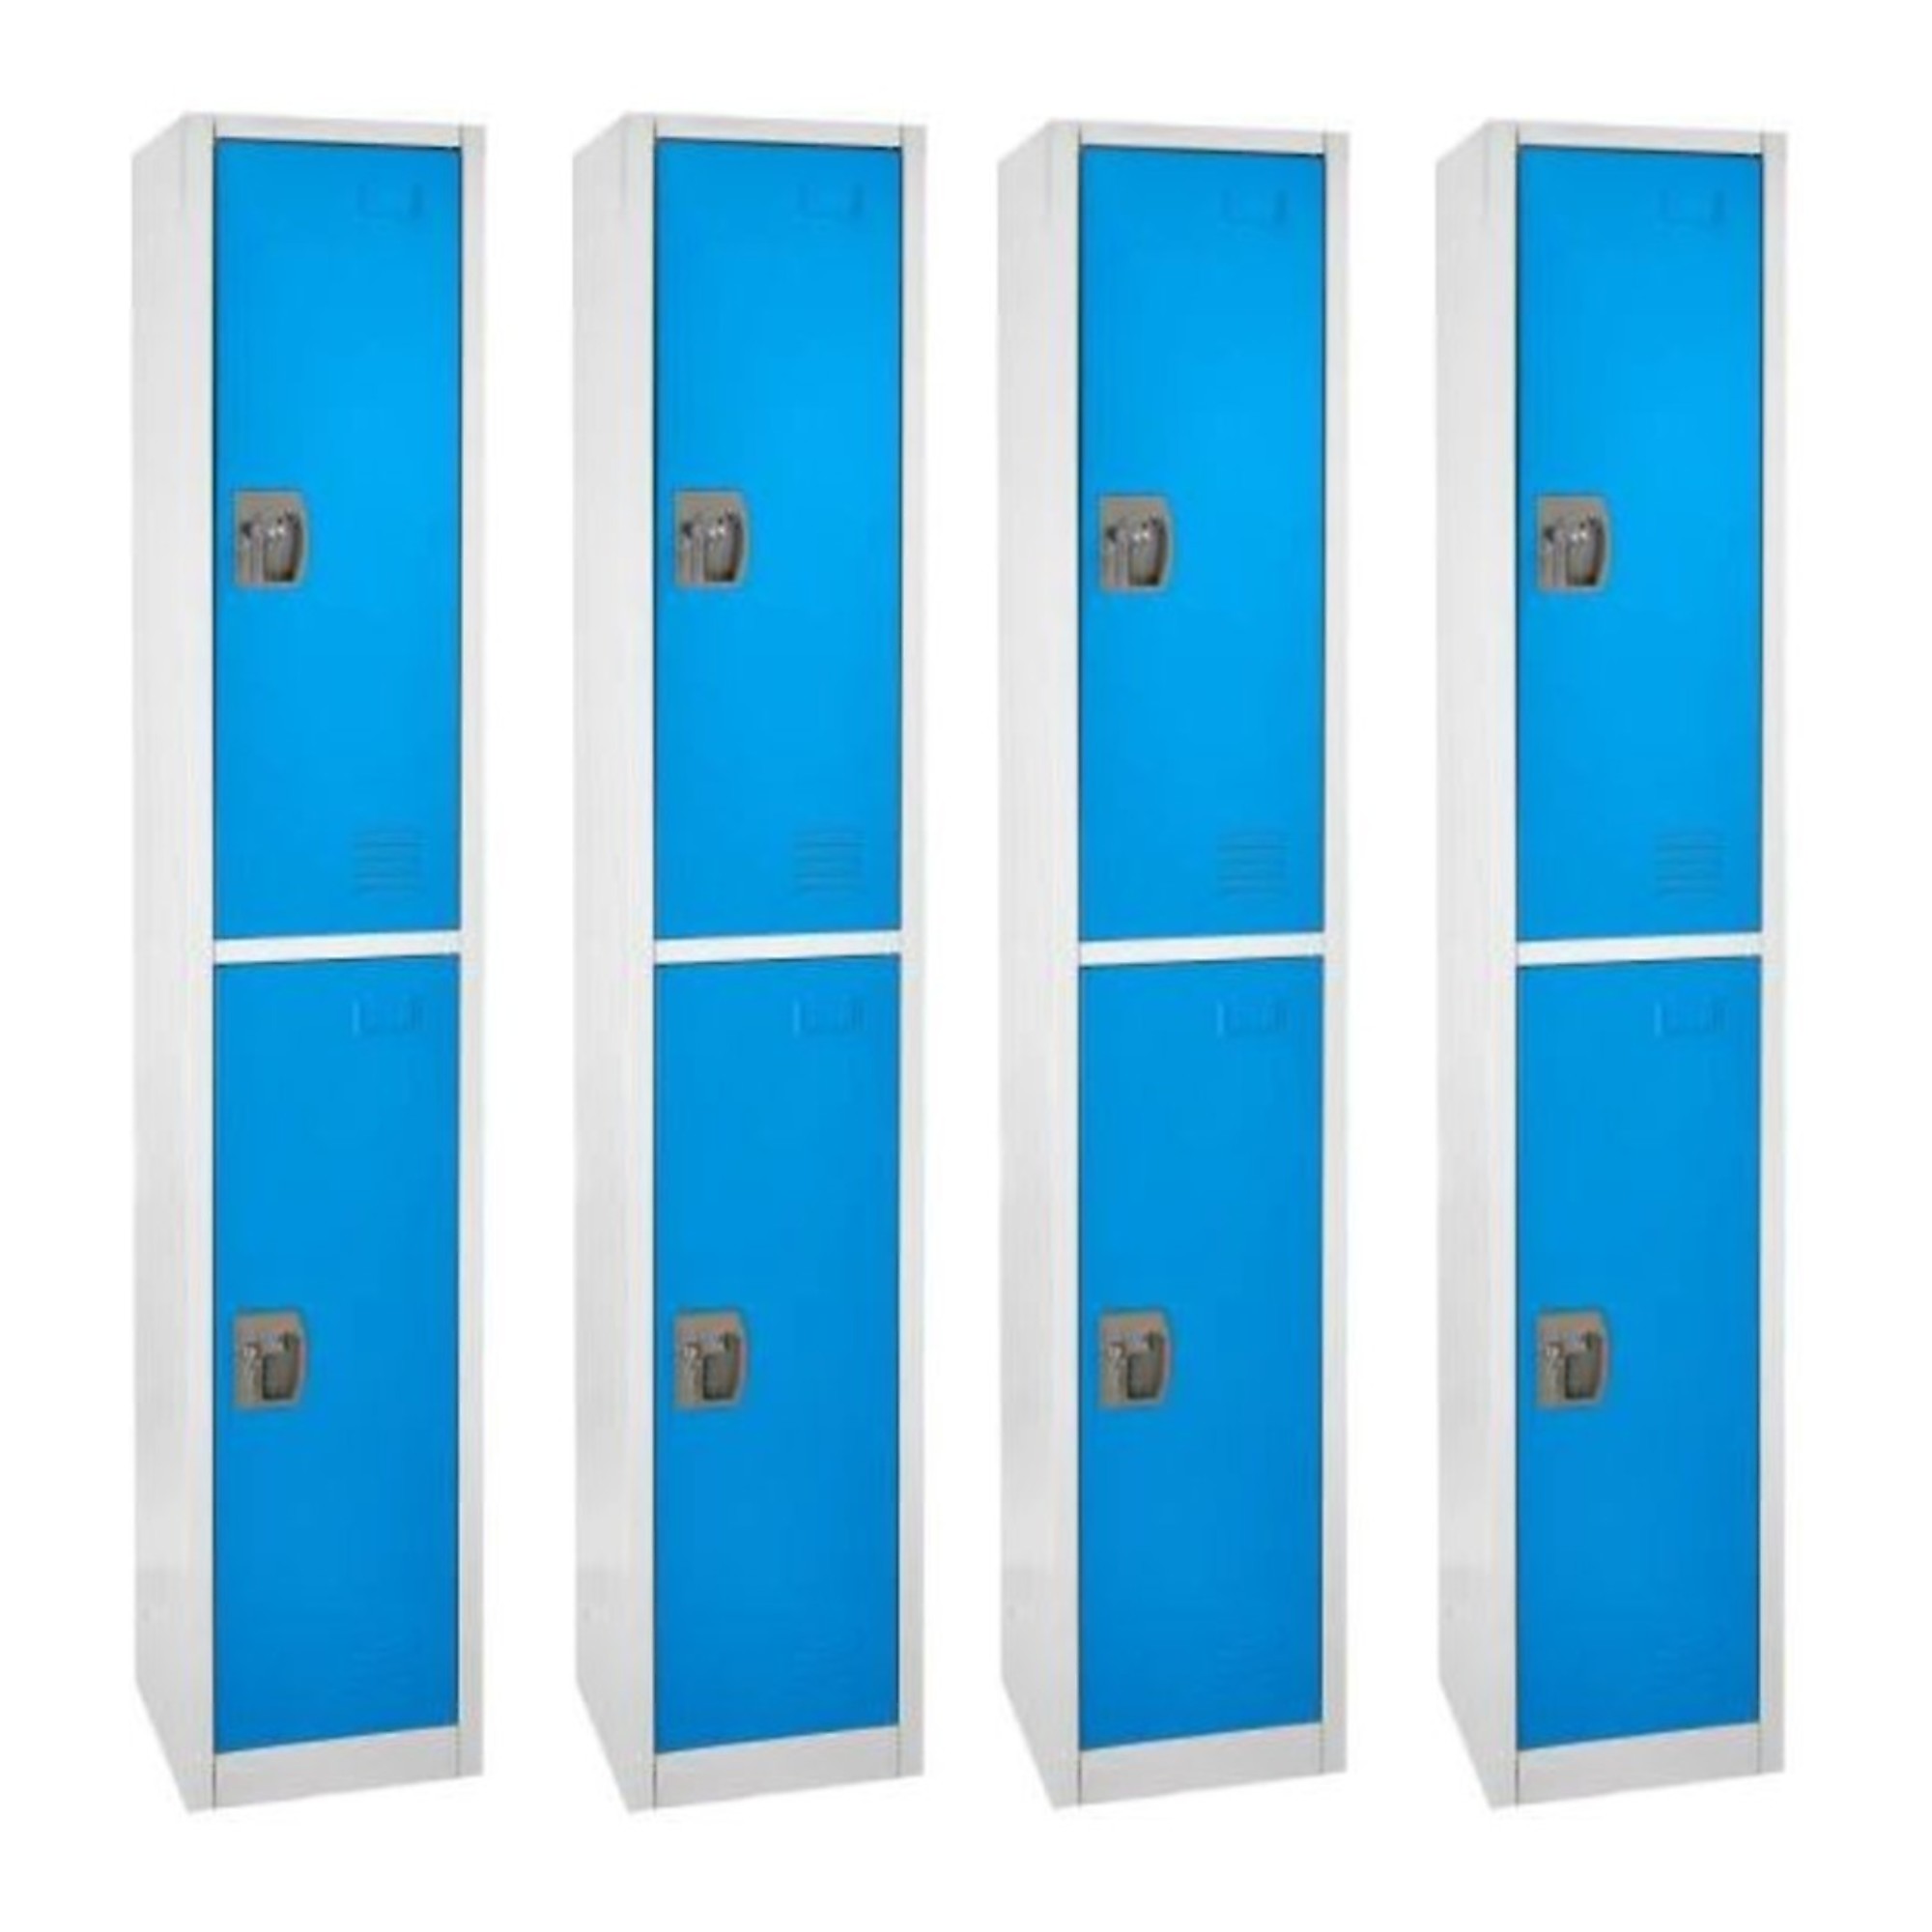 Alpine, 72Inch H 2-Tier Steel Storage Locker, Blue, 4-Pack, Height 72 in, Width 12 in, Color Blue, Model ADI629-202-BLU-4PK